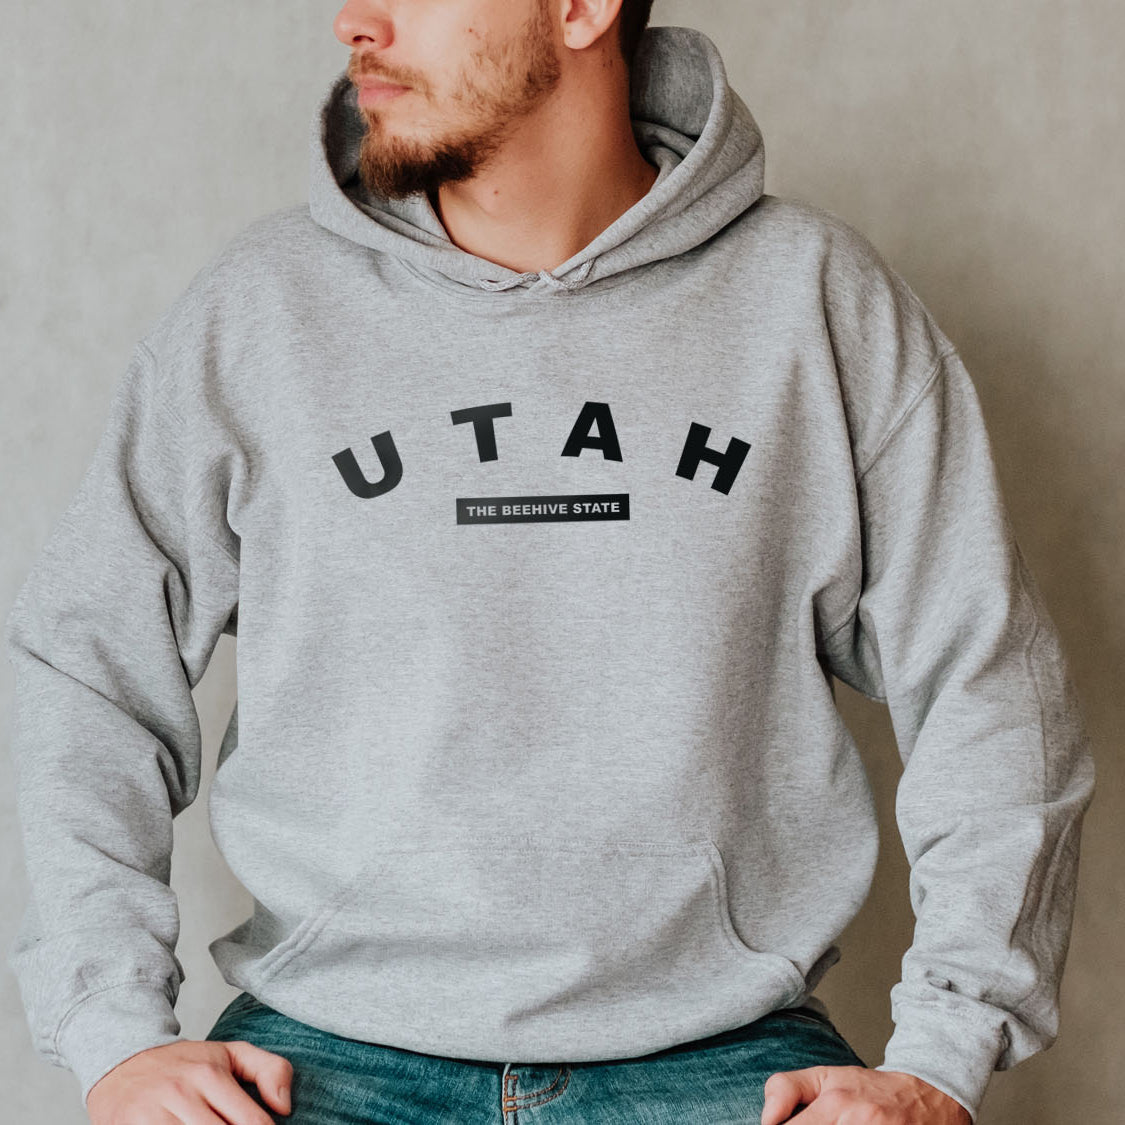 Utah The Beehive State Hoodie - United States Name & Slogan Minimal Design Printed Hoodie